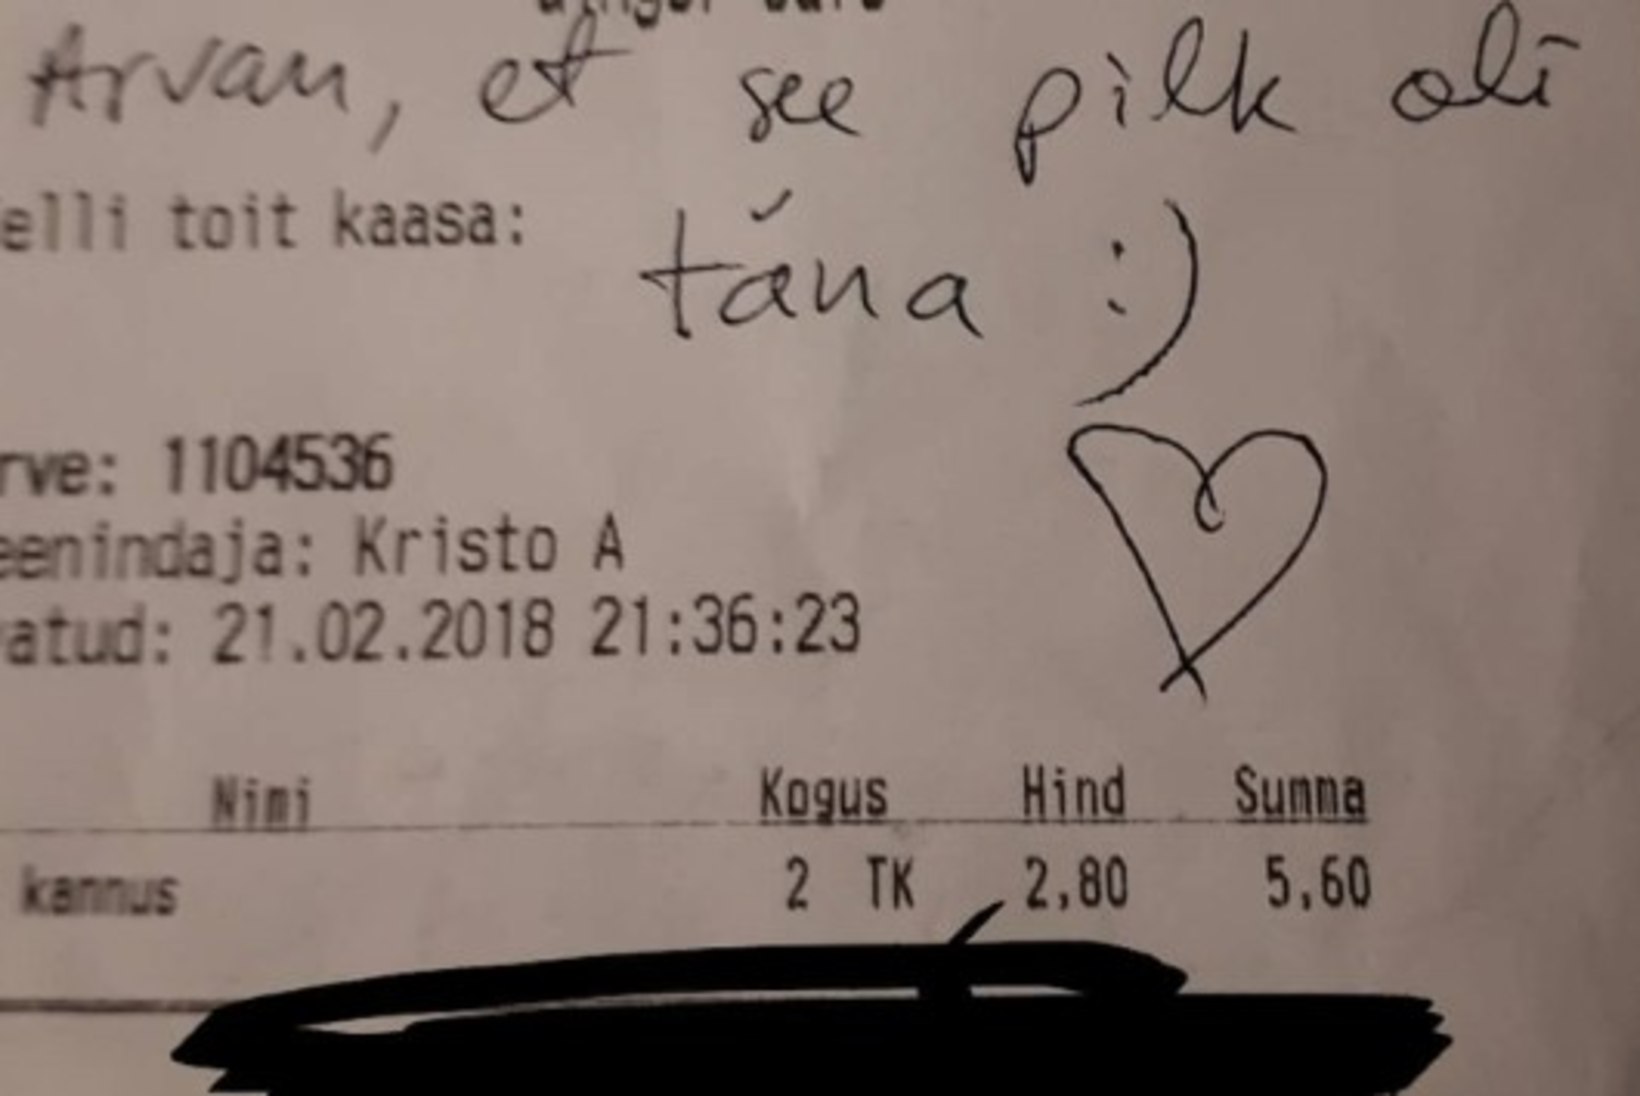 Romantika Tallinna kohvikus: aita leida klient, kes kirjutas teenindajale selle armsa sõnumi!